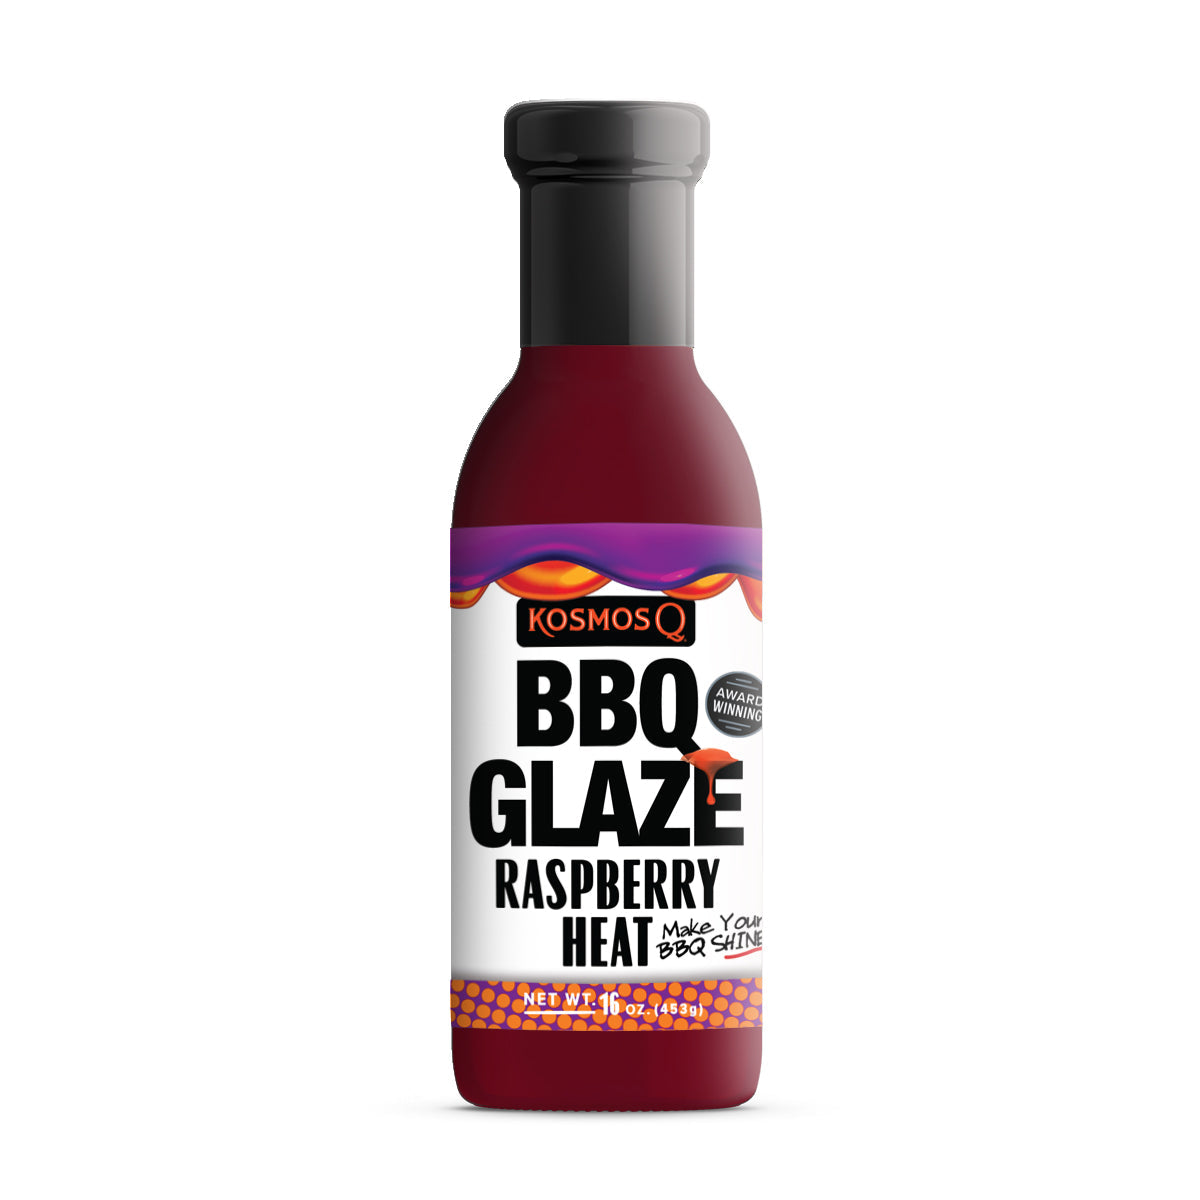 Kosmo's Q BBQ Glaze Single Bottle Raspberry Heat BBQ Glaze